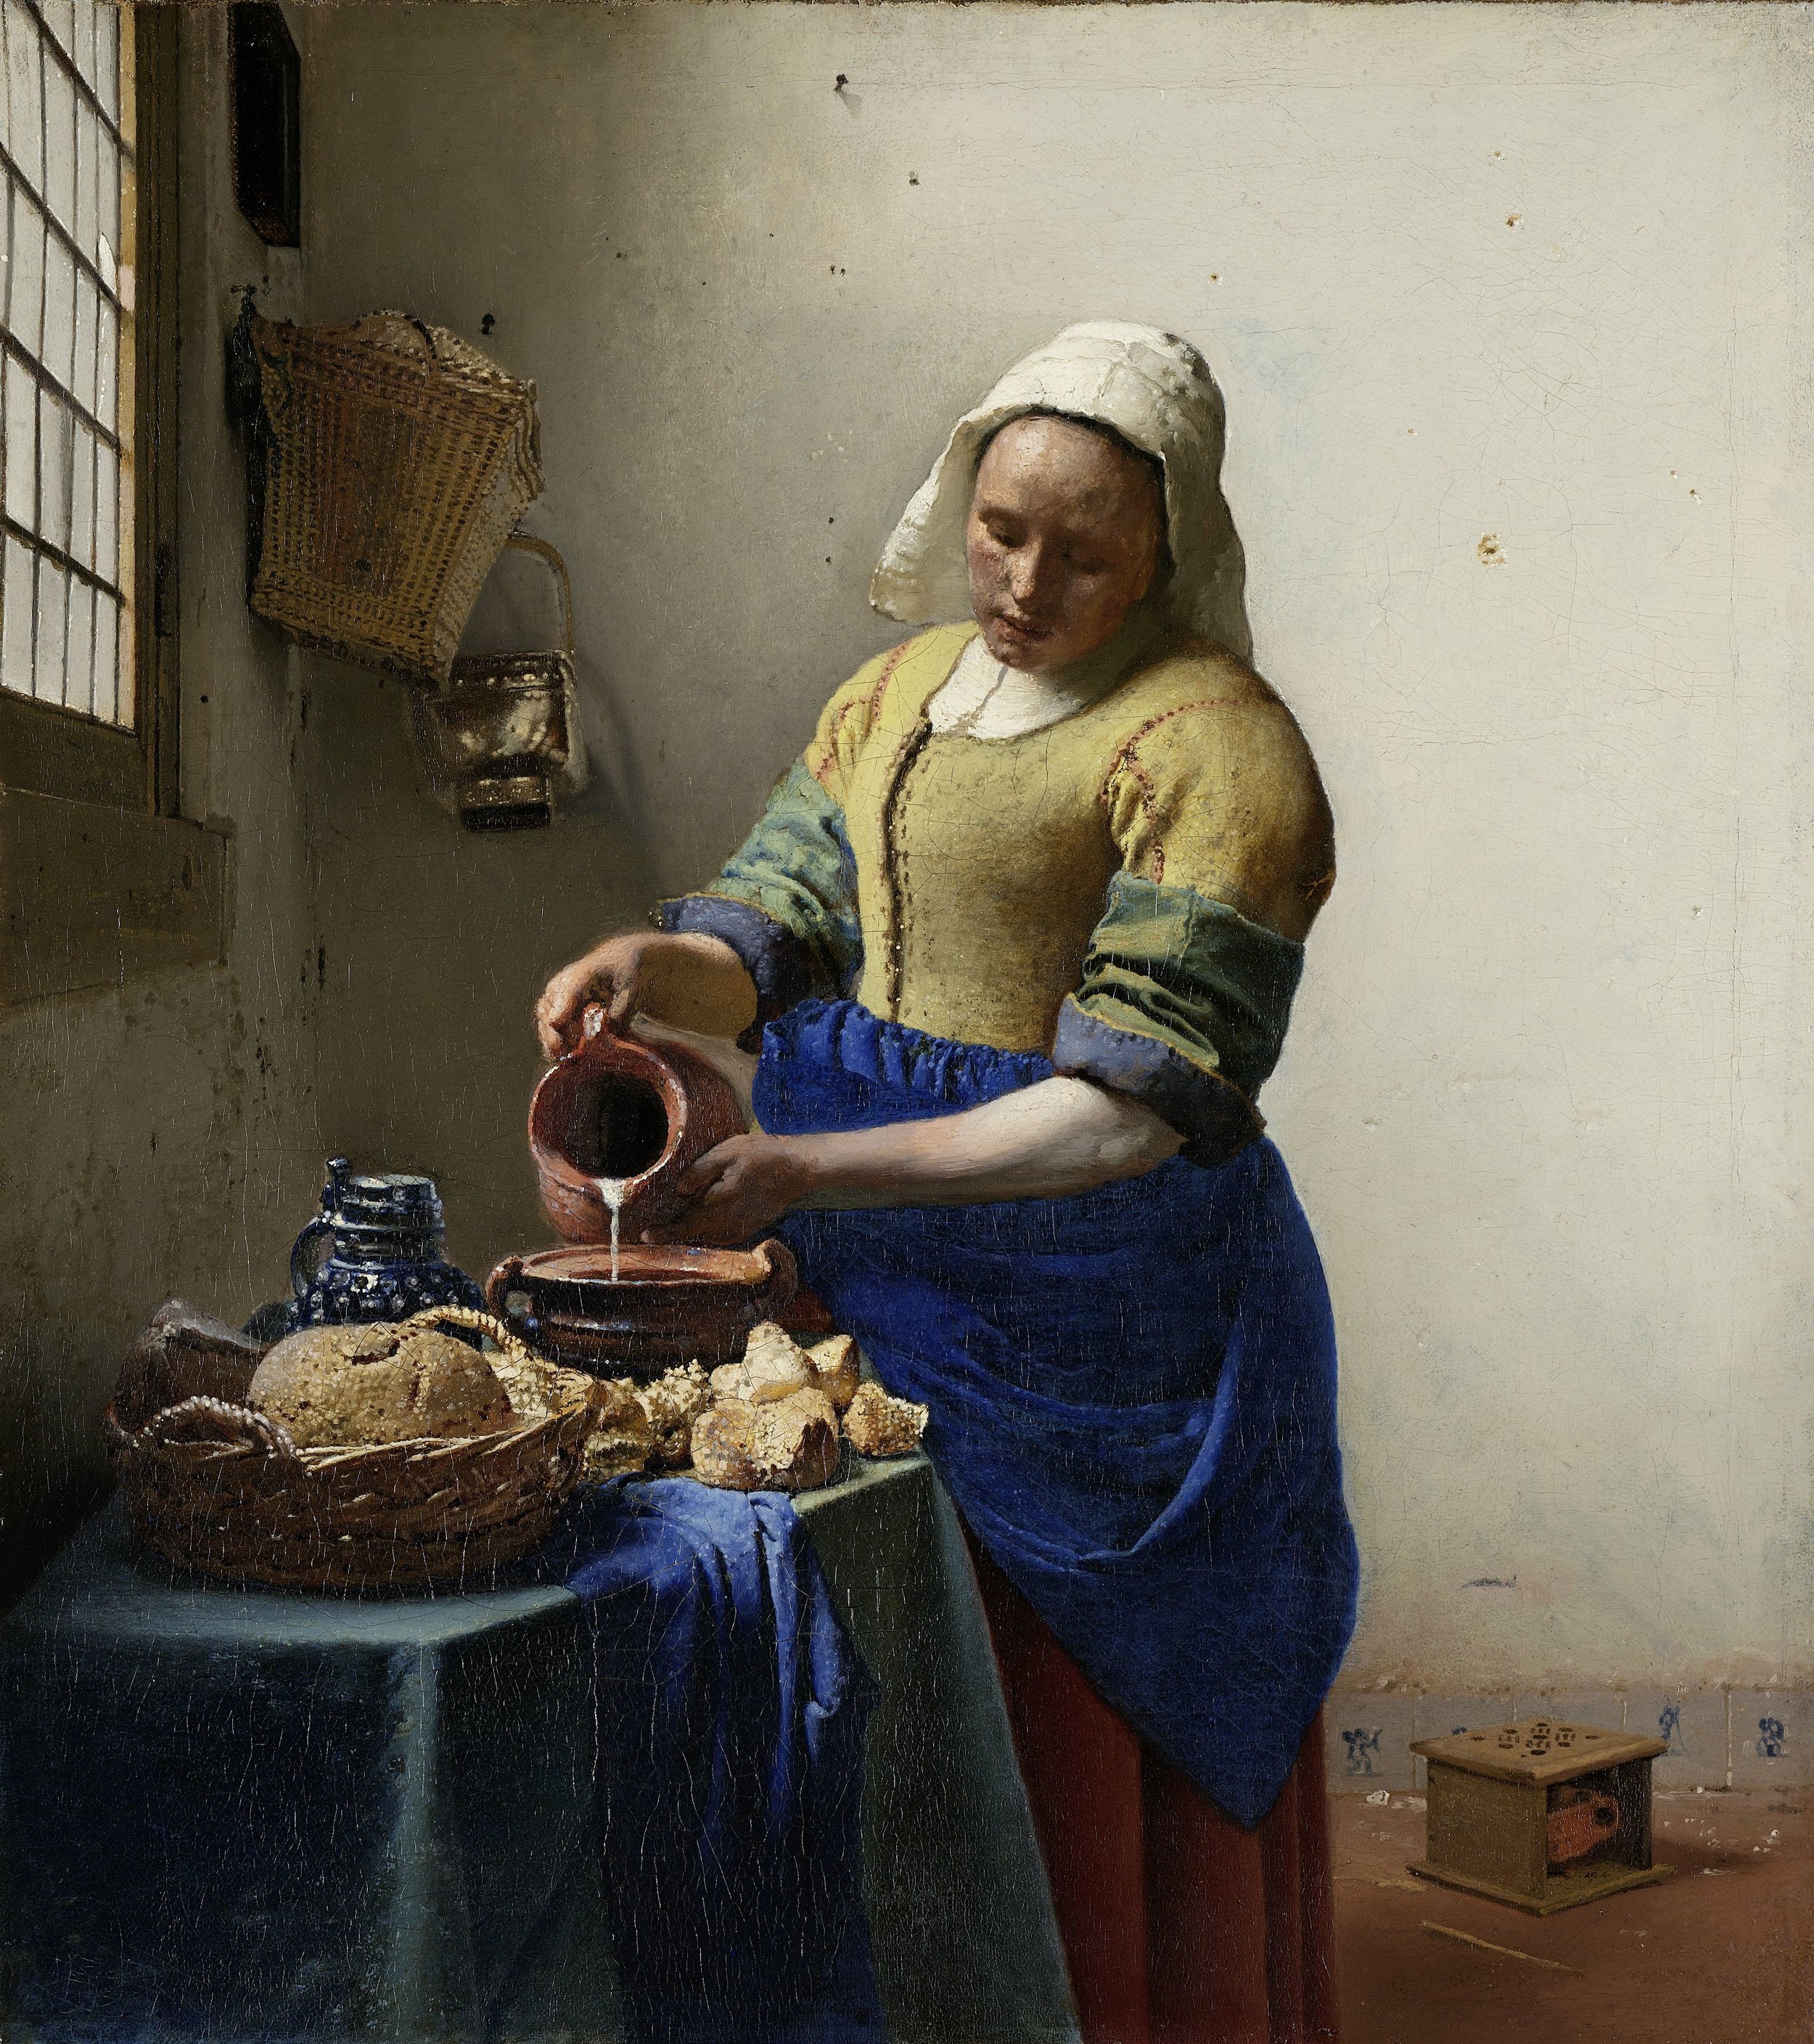   Jan Vermeer  The Milkmaid, ca. 1660 Image: © Rijksmuseum, Amsterdam 